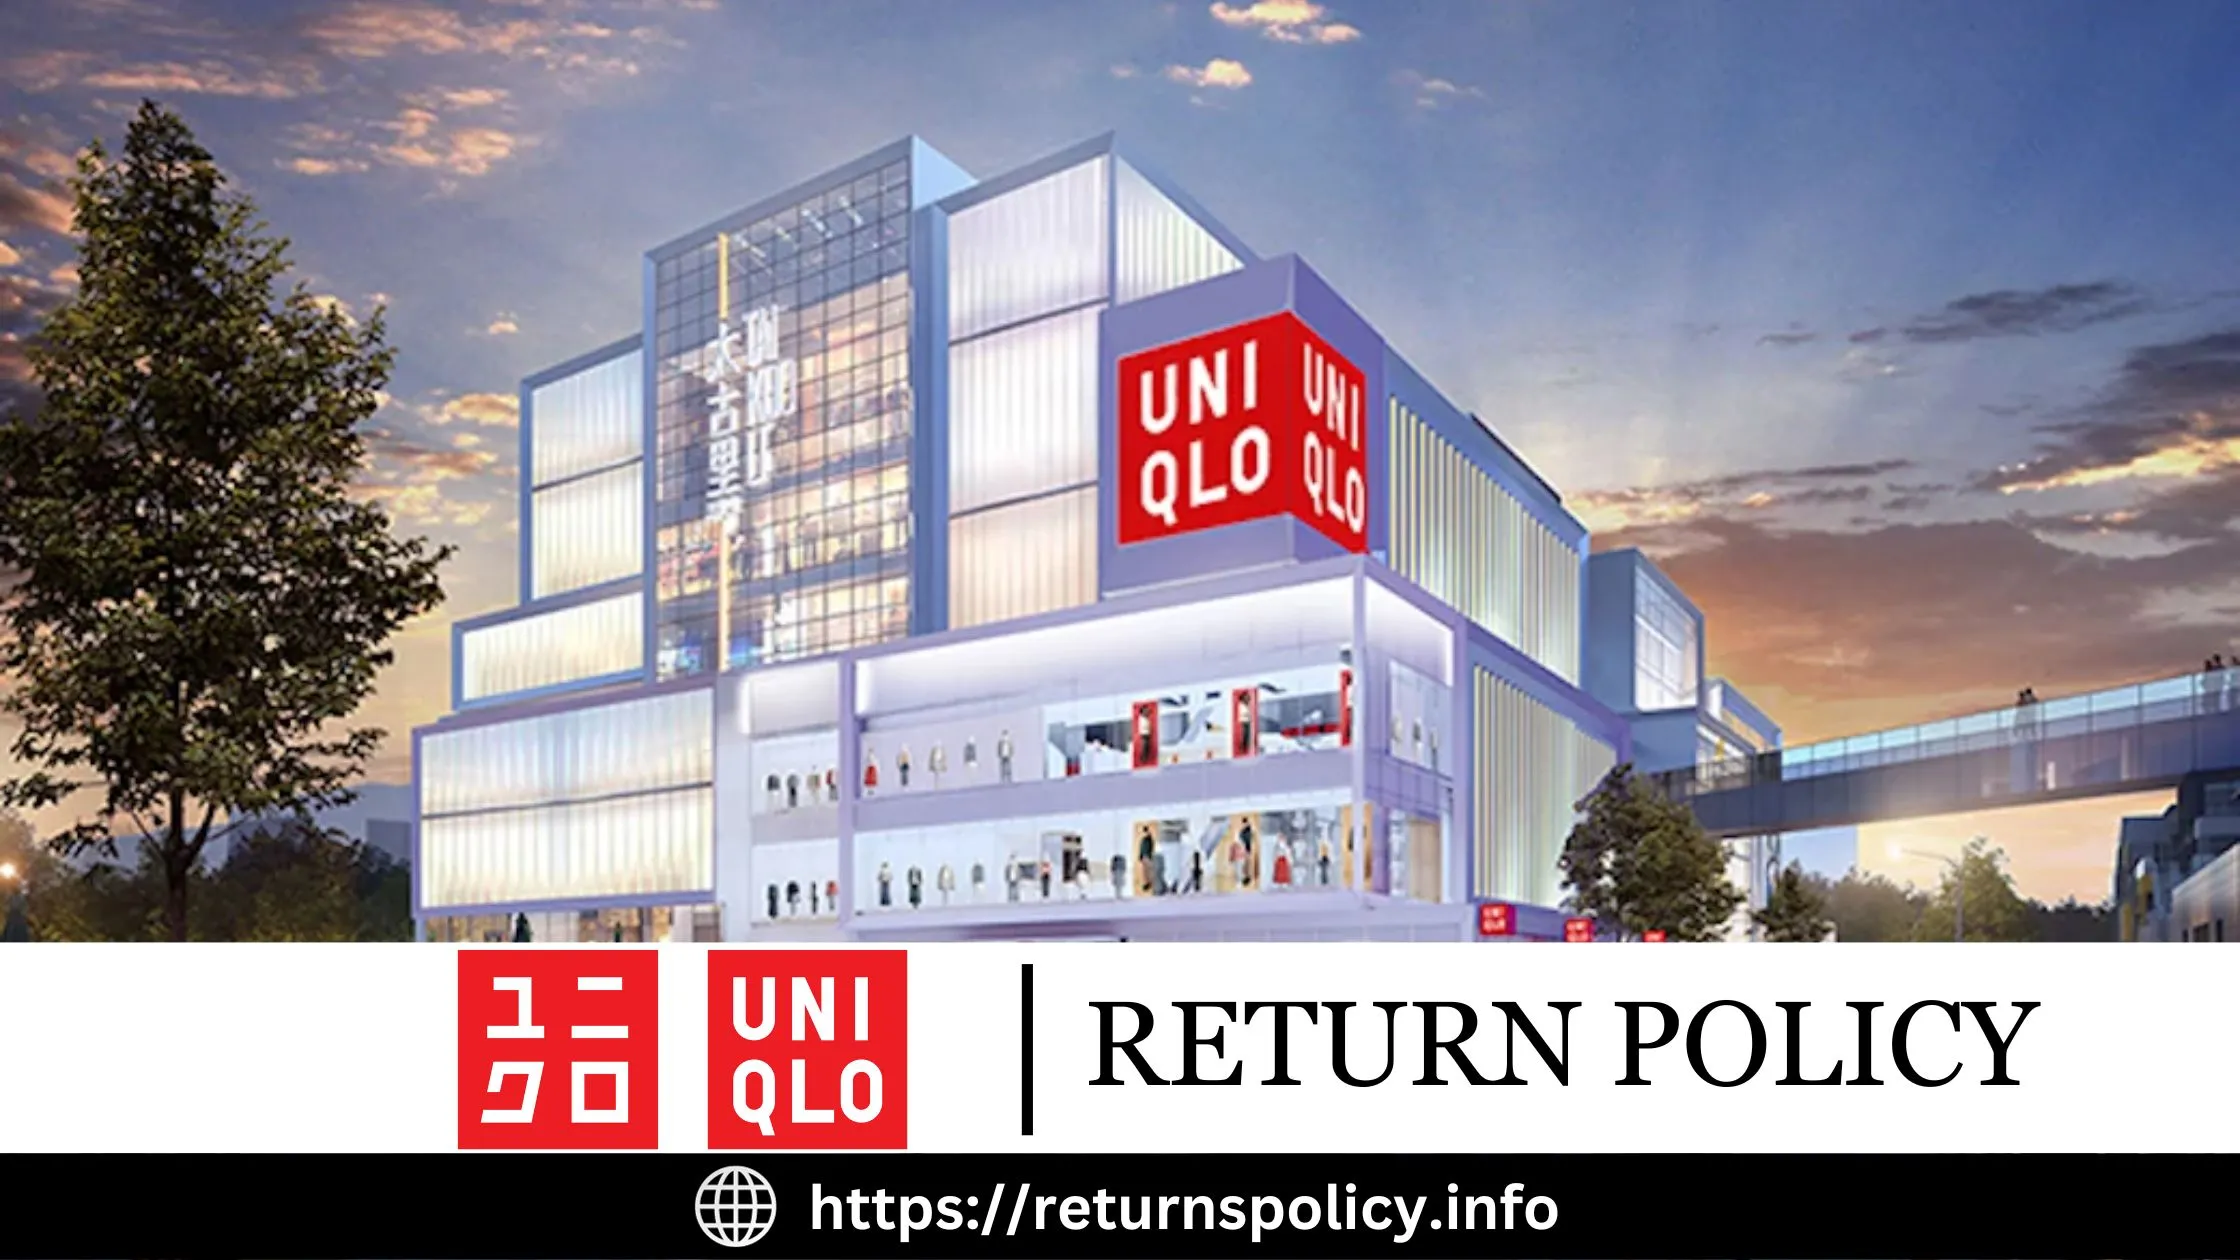 Uniqlo Return Policy